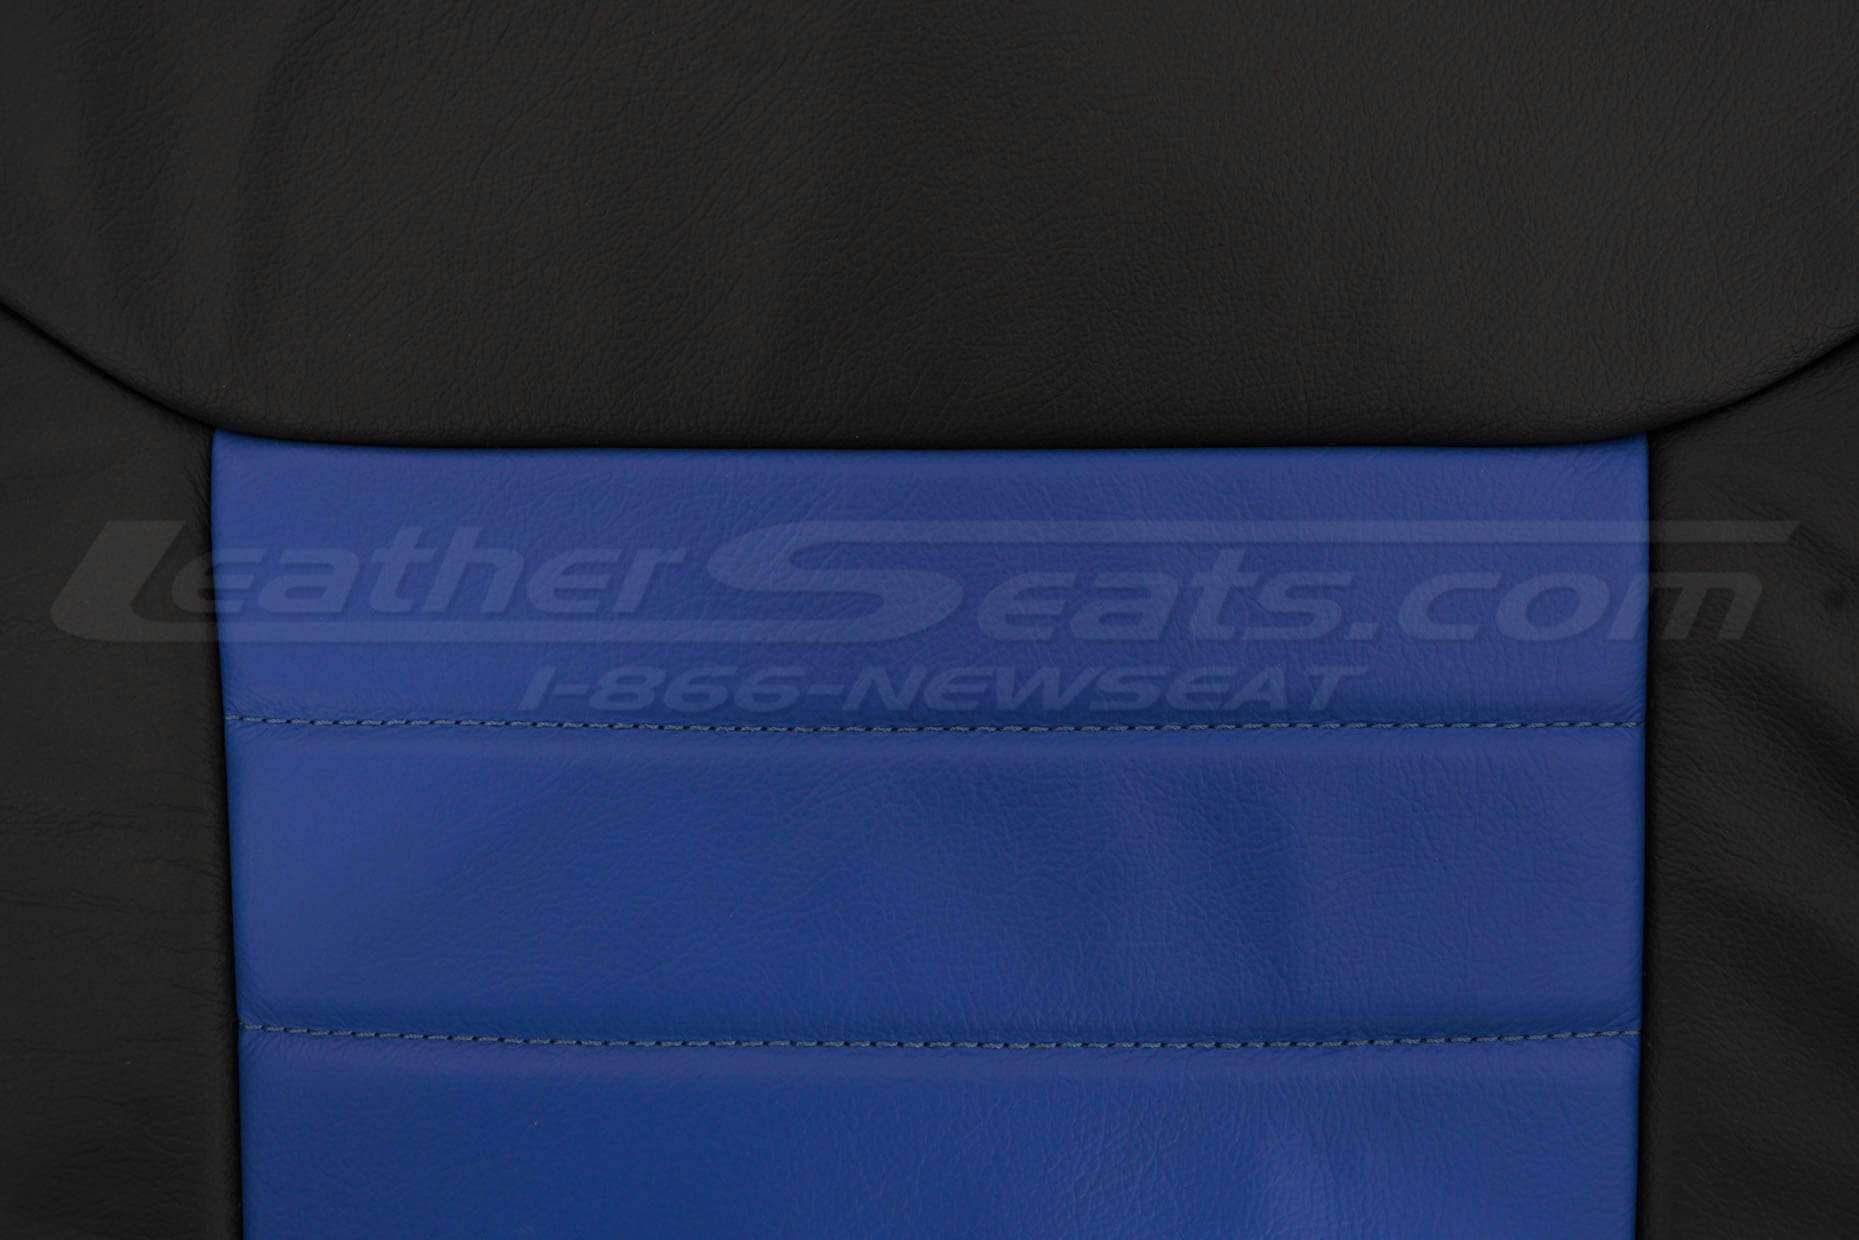 Insert section of backrest